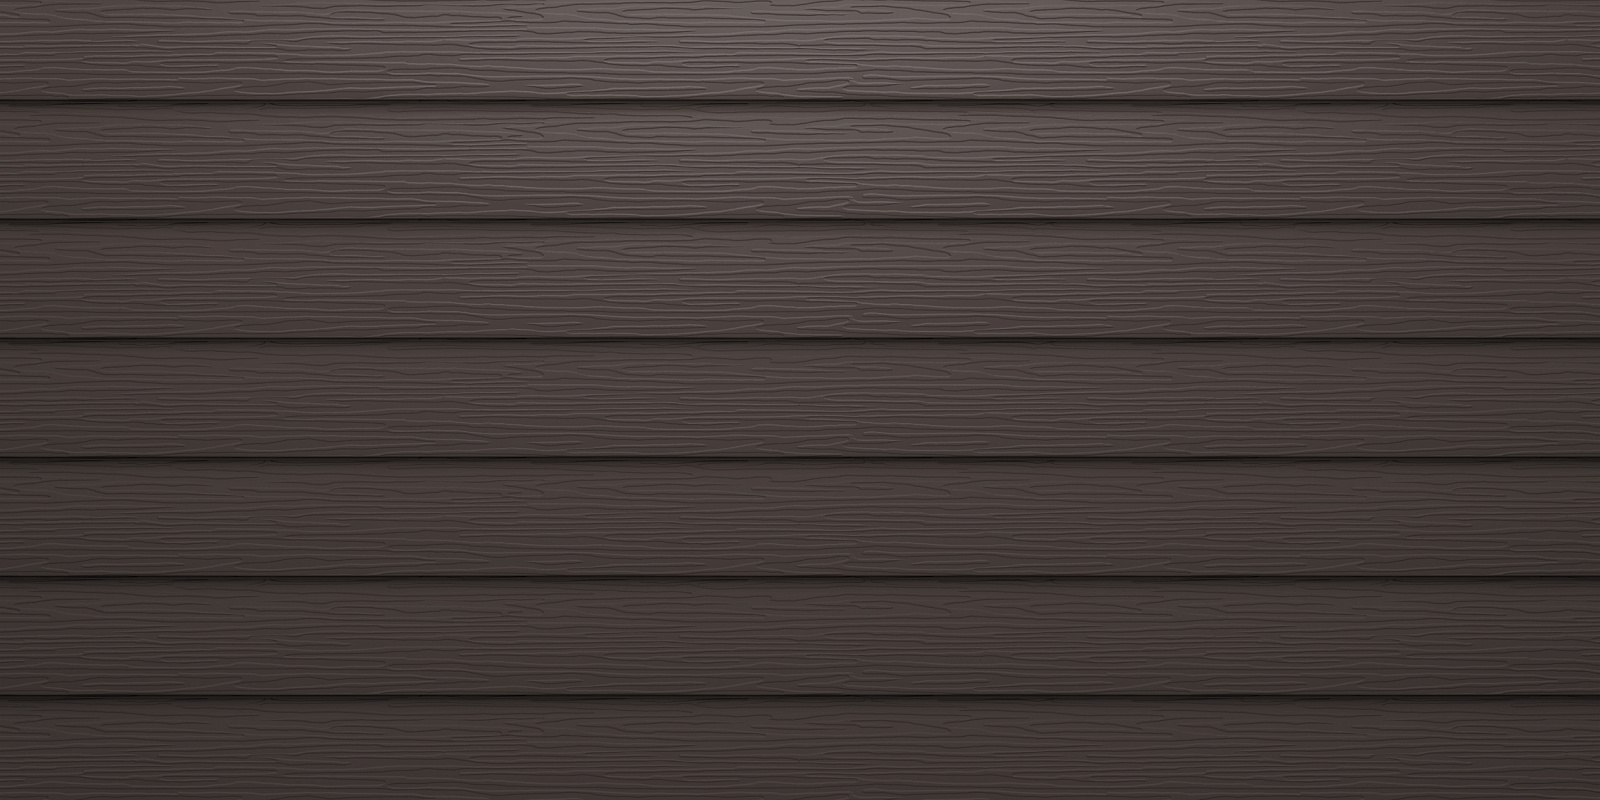 Скандинавская доска узкая одинарная Pural, Тёмно-коричневый RR32